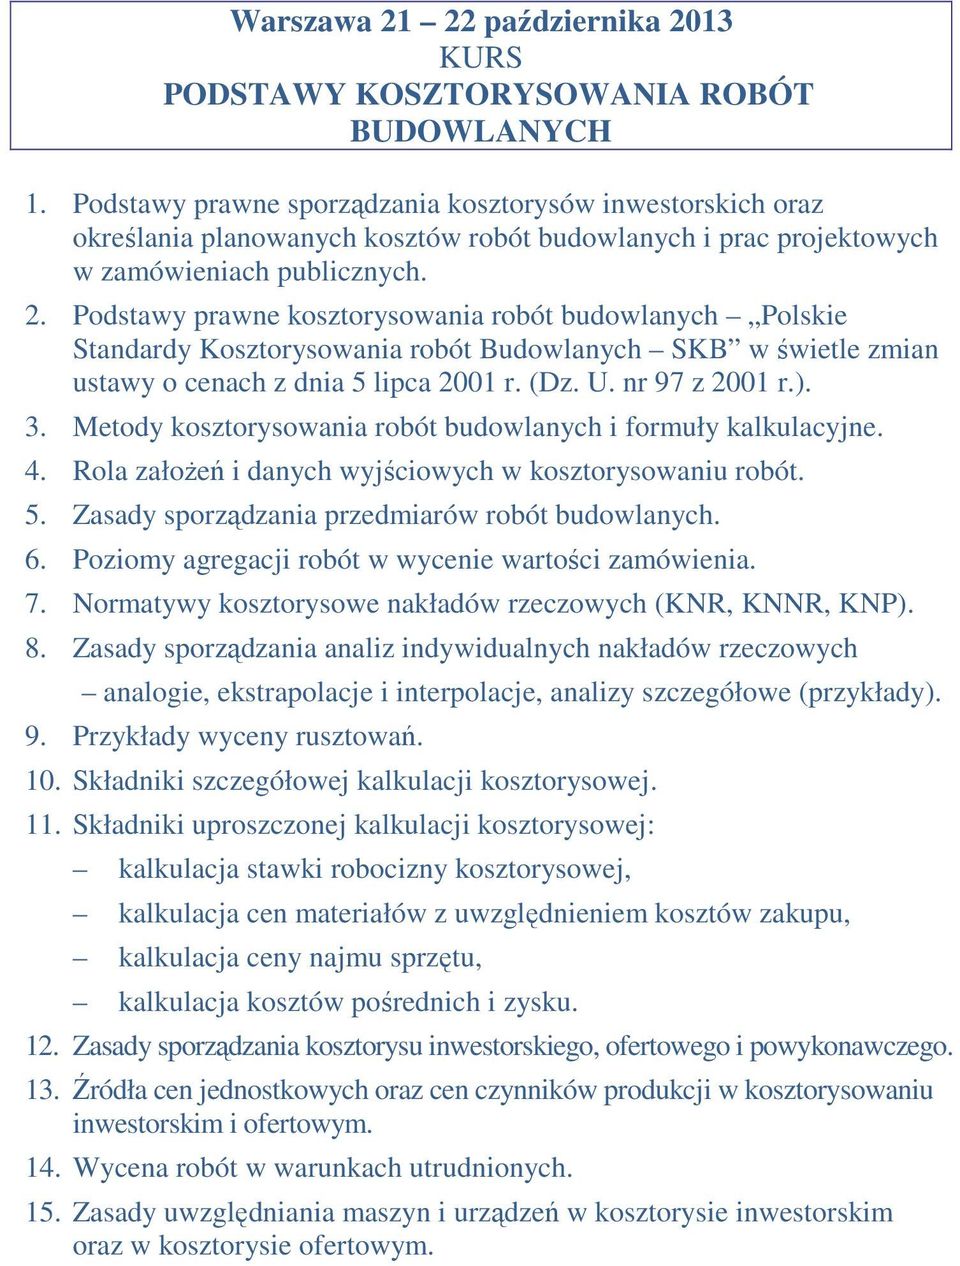 Podstawy prawne kosztorysowania robót budowlanych Polskie Standardy Kosztorysowania robót Budowlanych SKB w świetle zmian ustawy o cenach z dnia 5 lipca 2001 r. (Dz. U. nr 97 z 2001 r.). 3.